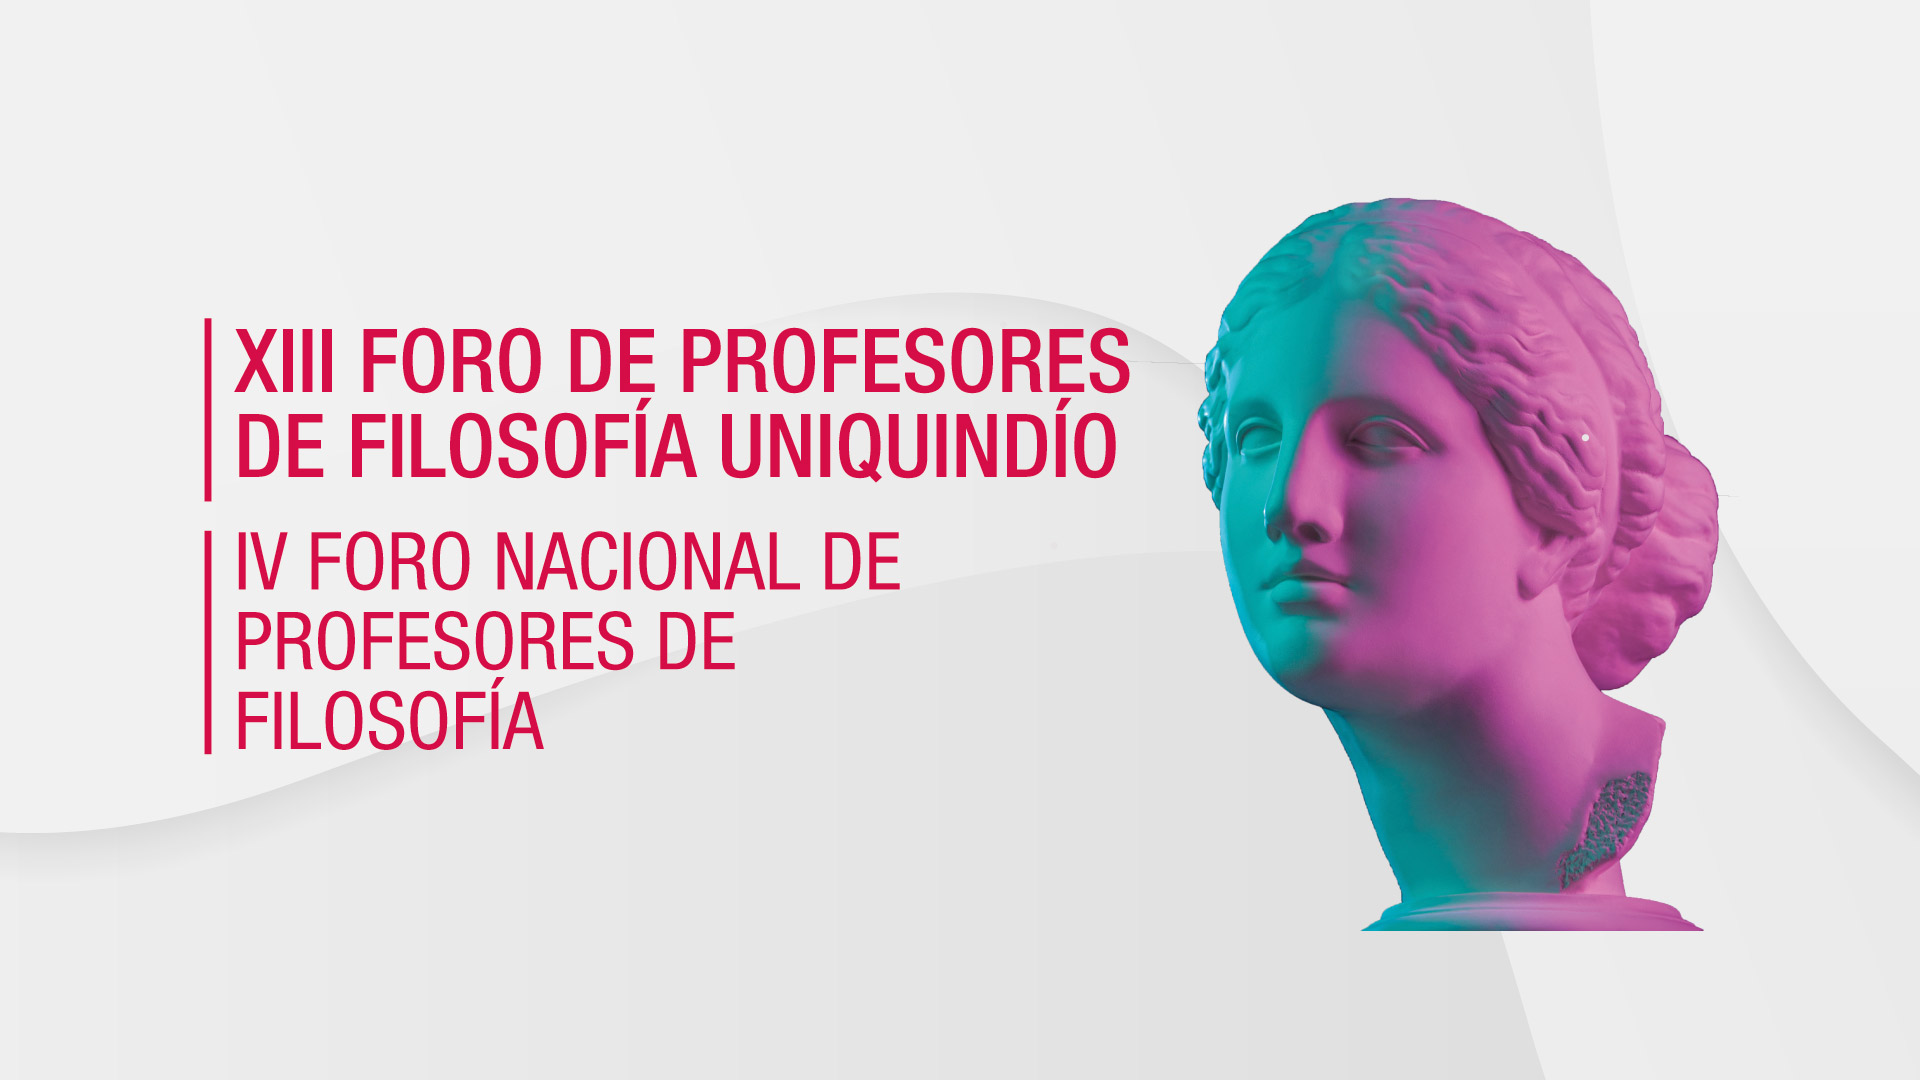 Evento | XIII Foro de Profesores de Filosofía - Universidad del Quindío y IV Foro Nacional de Profesores de Filosofía